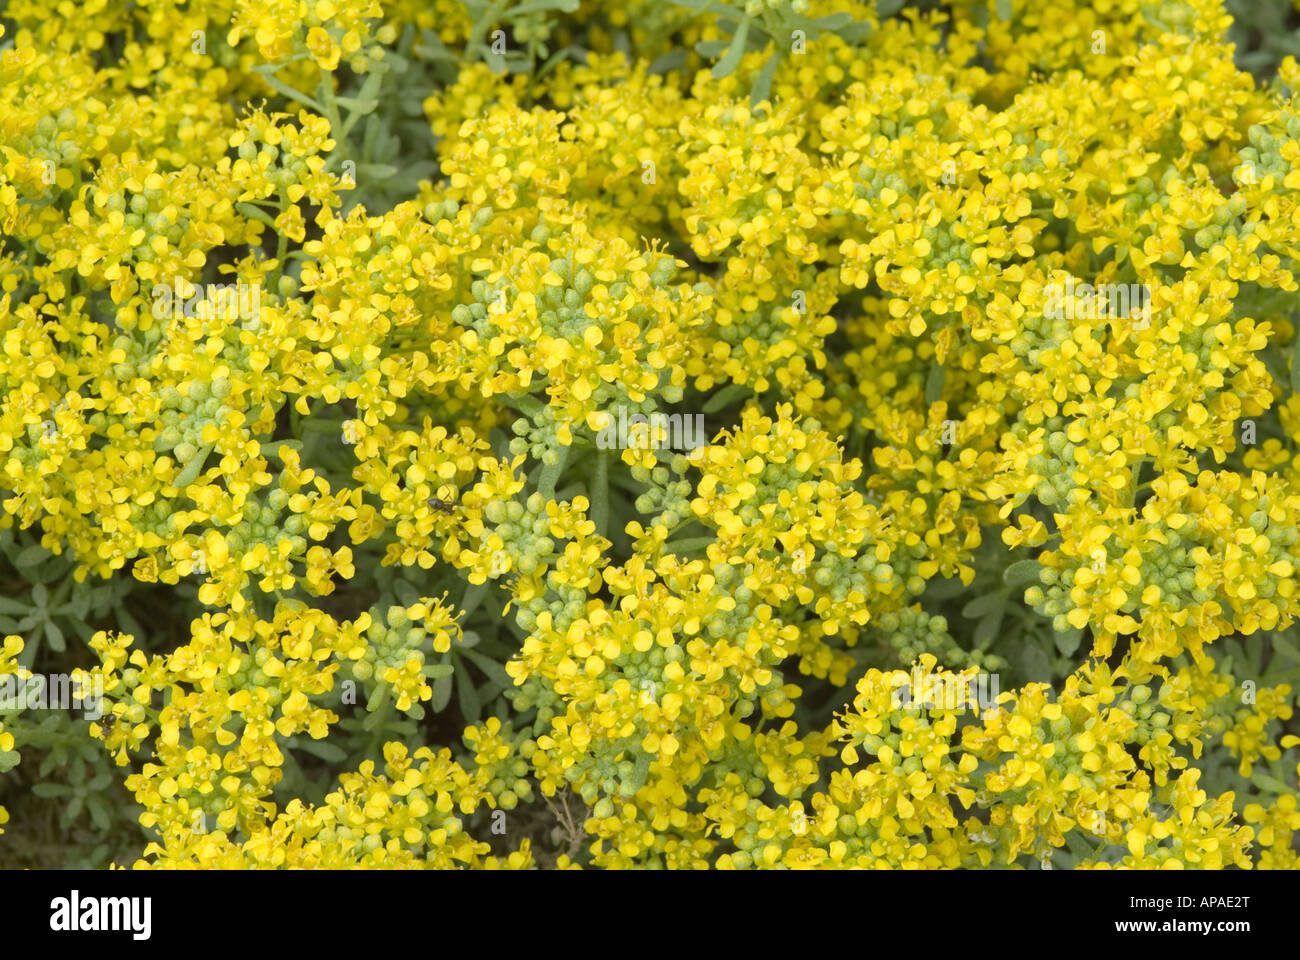 Alyssum propinquum flowering Stock Photo